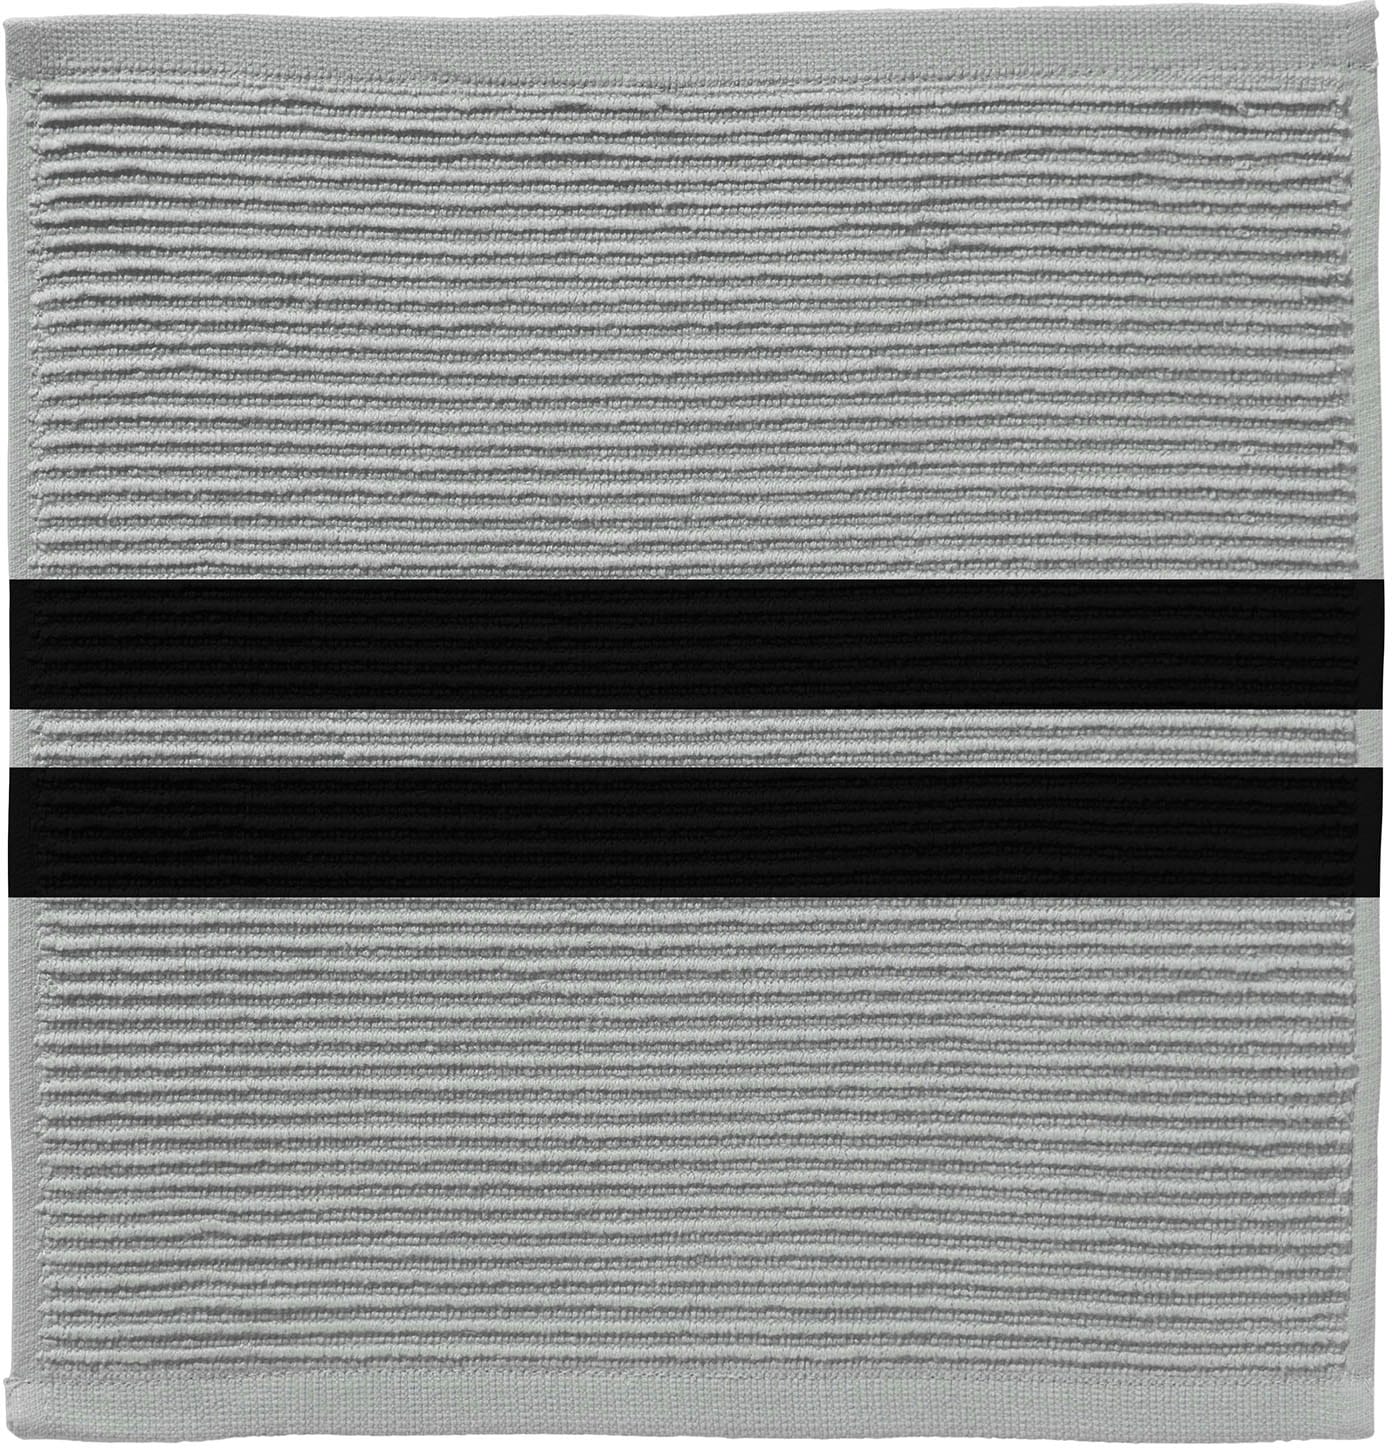 DDDDD Spültuch »Baxter«, (Set, 4 tlg.), aus reiner Baumwolle, 30x30 cm